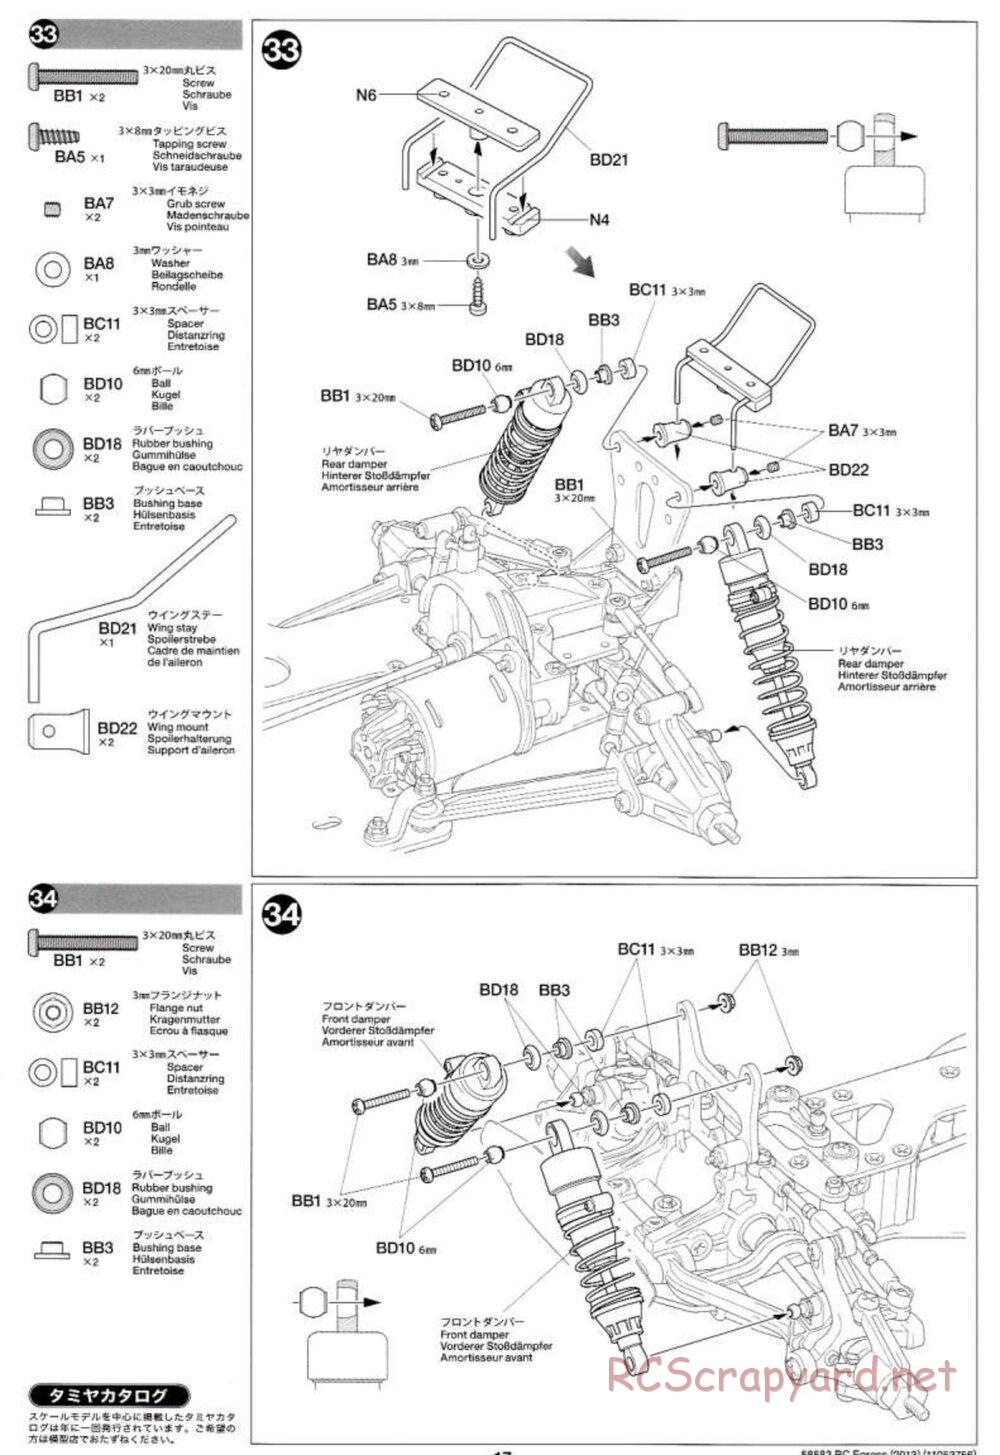 Tamiya - Egress 2013 - AV Chassis - Manual - Page 17